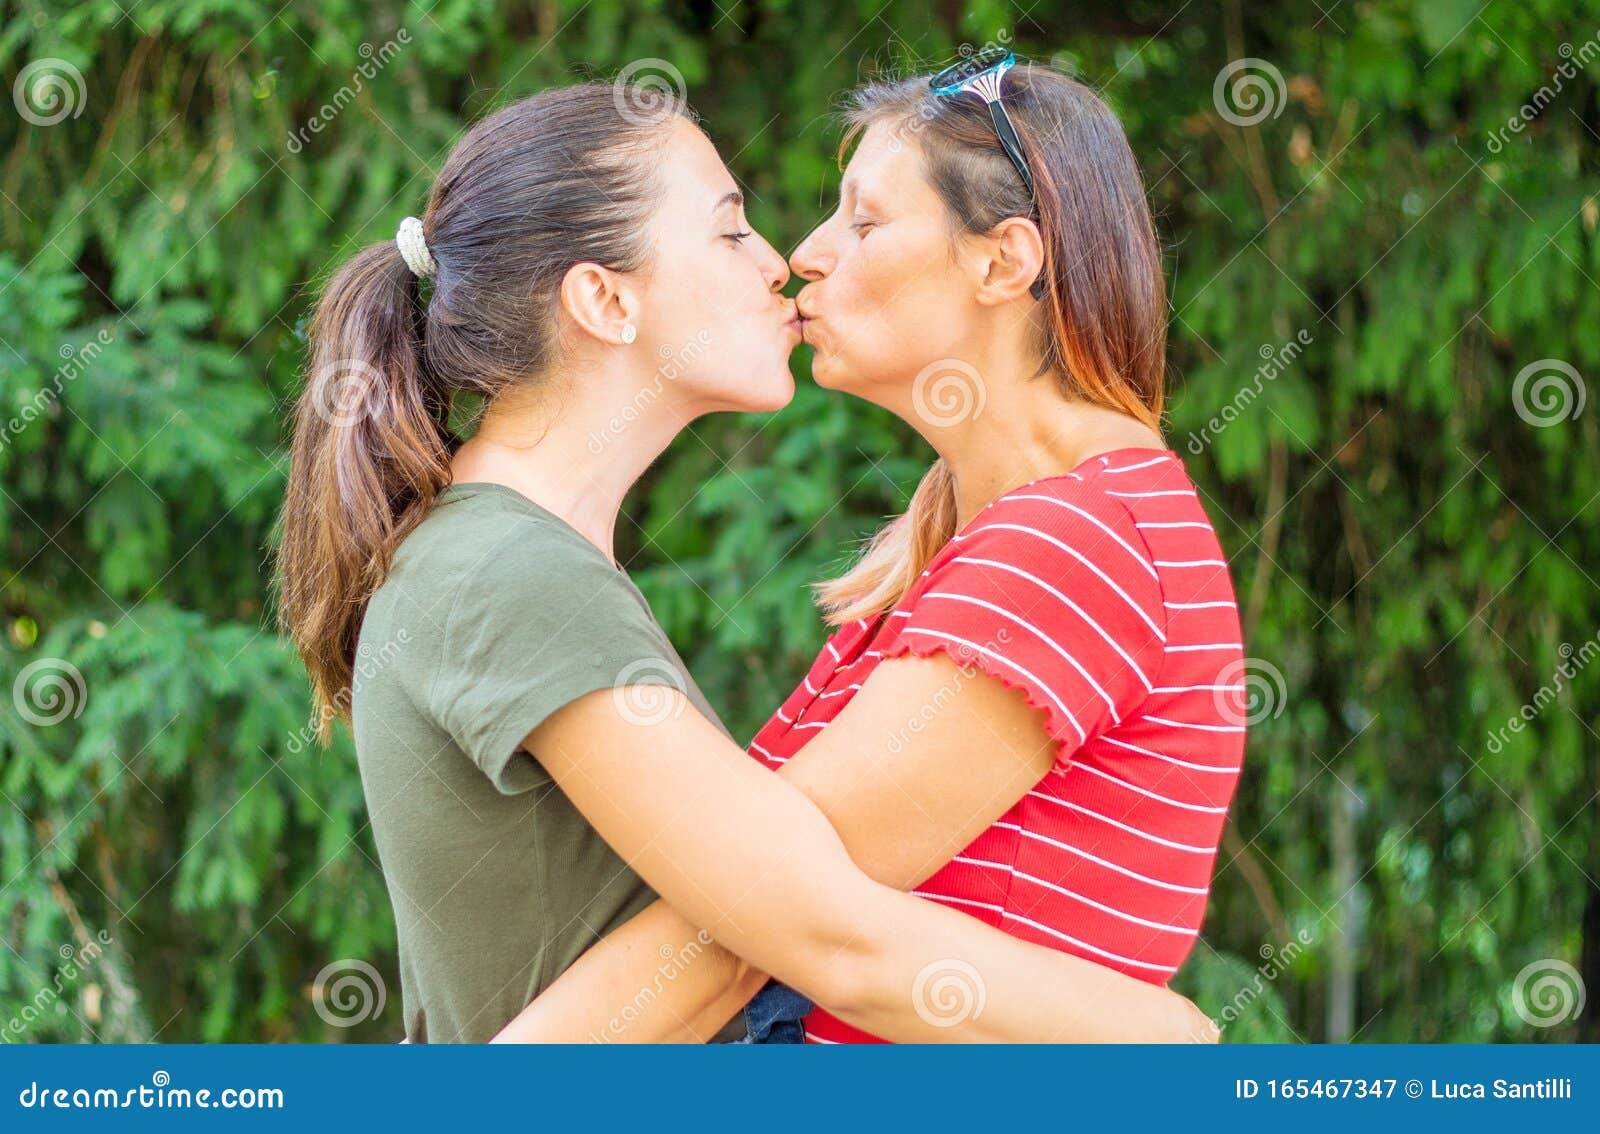 older lesbian kissing girl